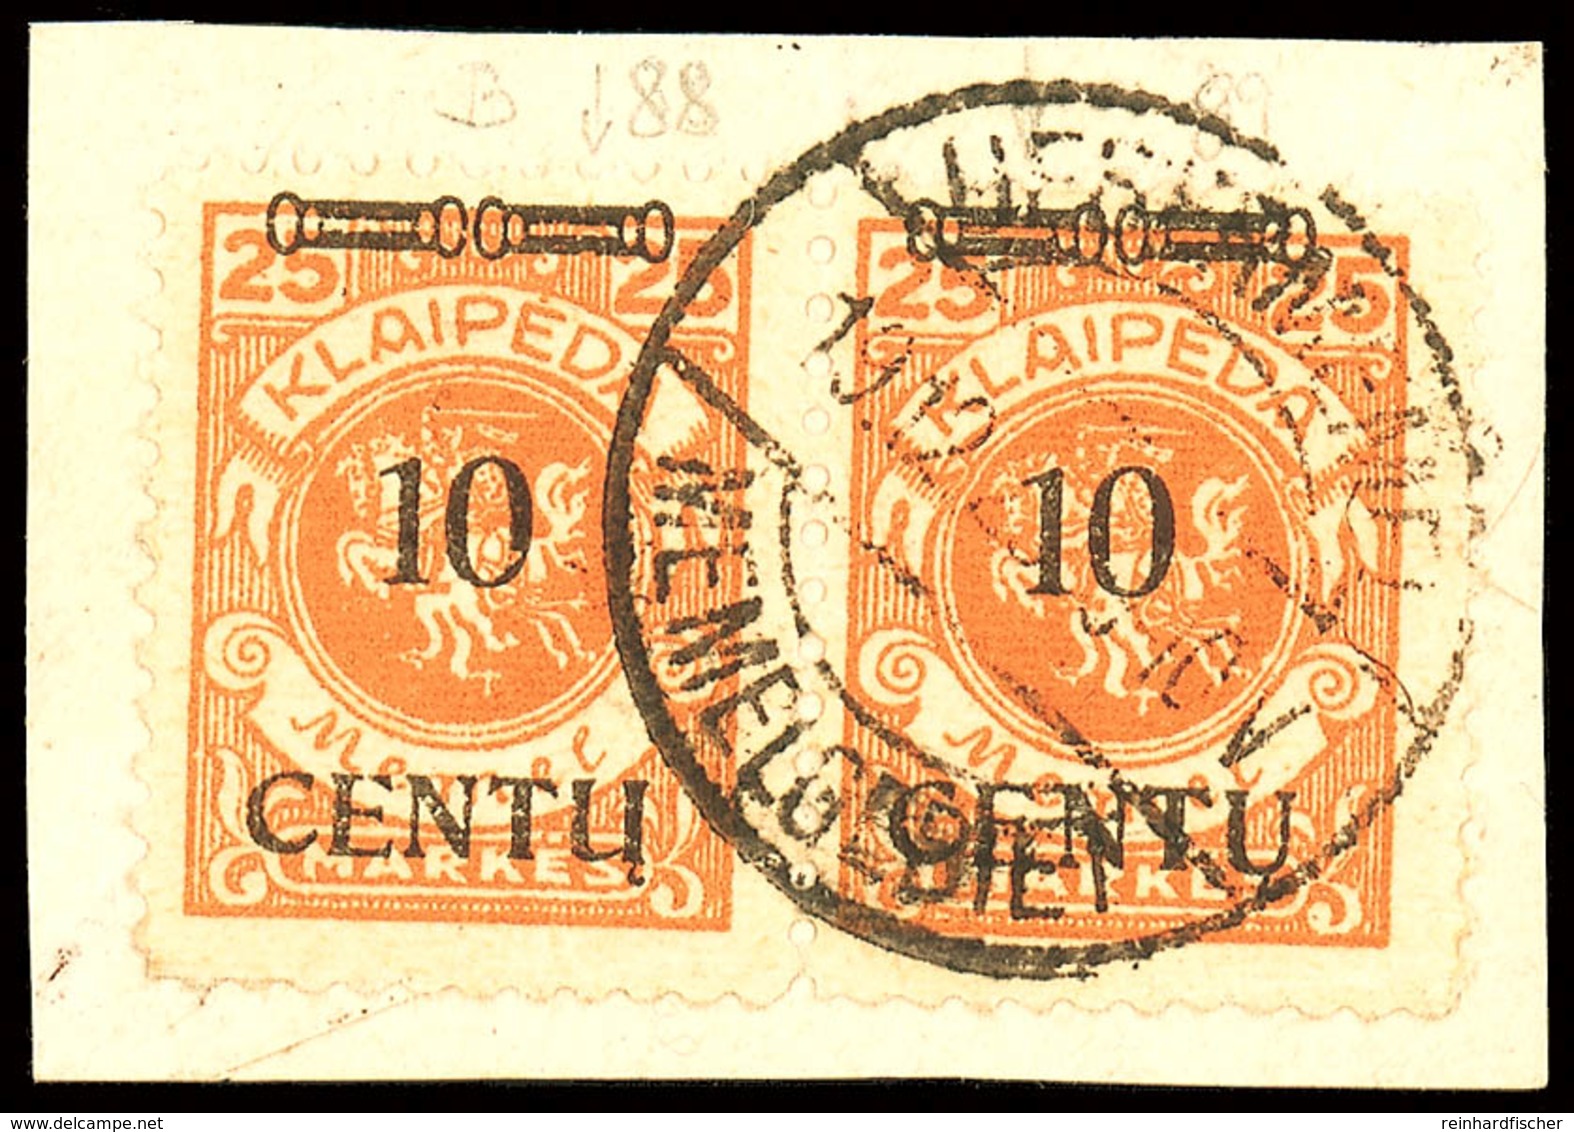 10 C. Auf 25 M Im Waagerechten Typenpaar (BI/AI) Auf Kabinett-Briefstück Mit Dt. Stempel, 1 Wert Mit Klebefalte, Geprüft - Memelland 1923